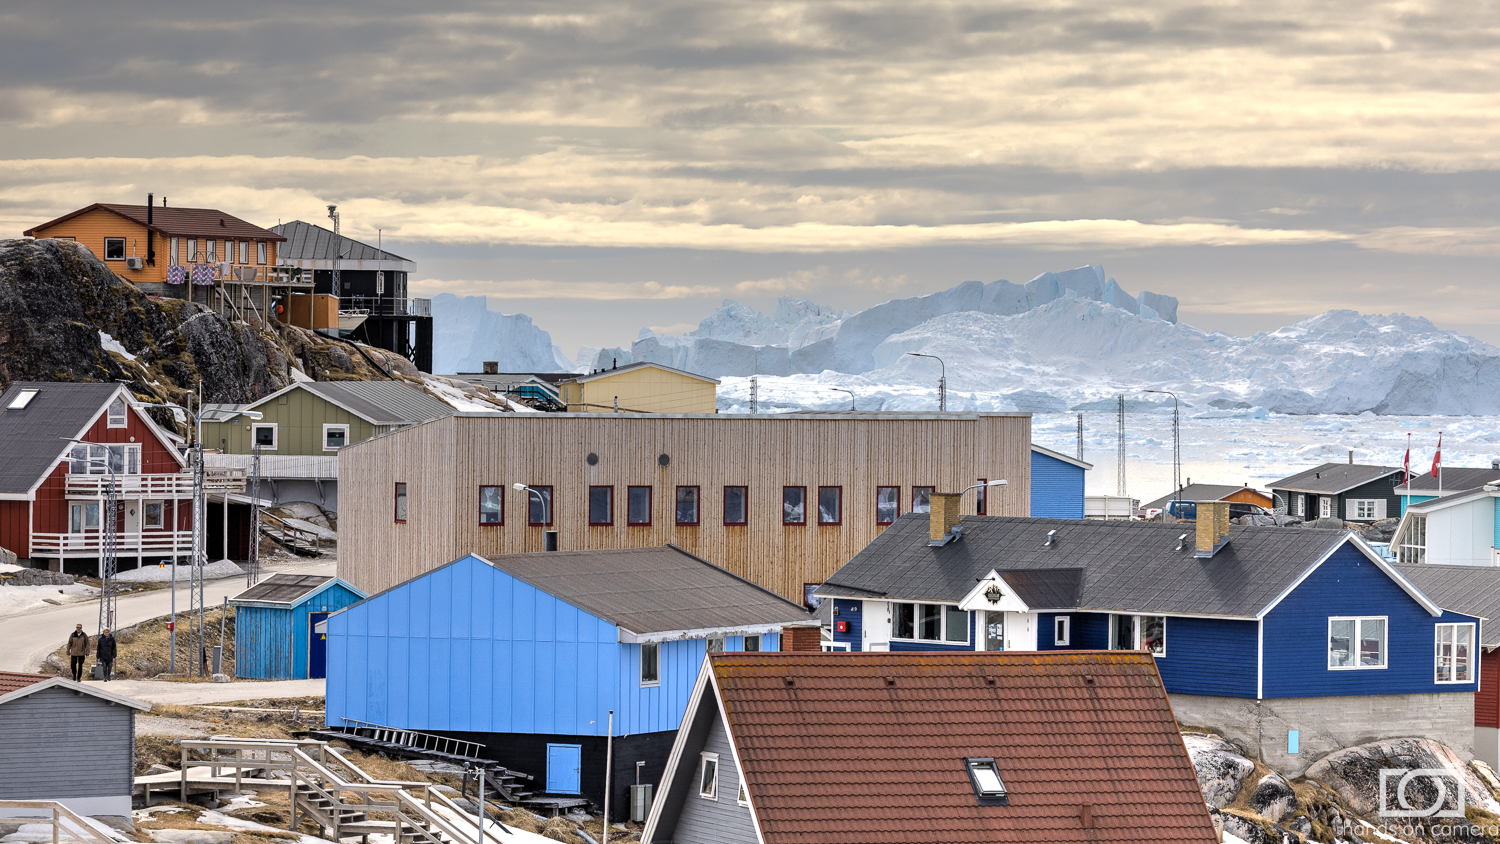 Ilulissat Grönland, Fotoreise mit Hands on Camera